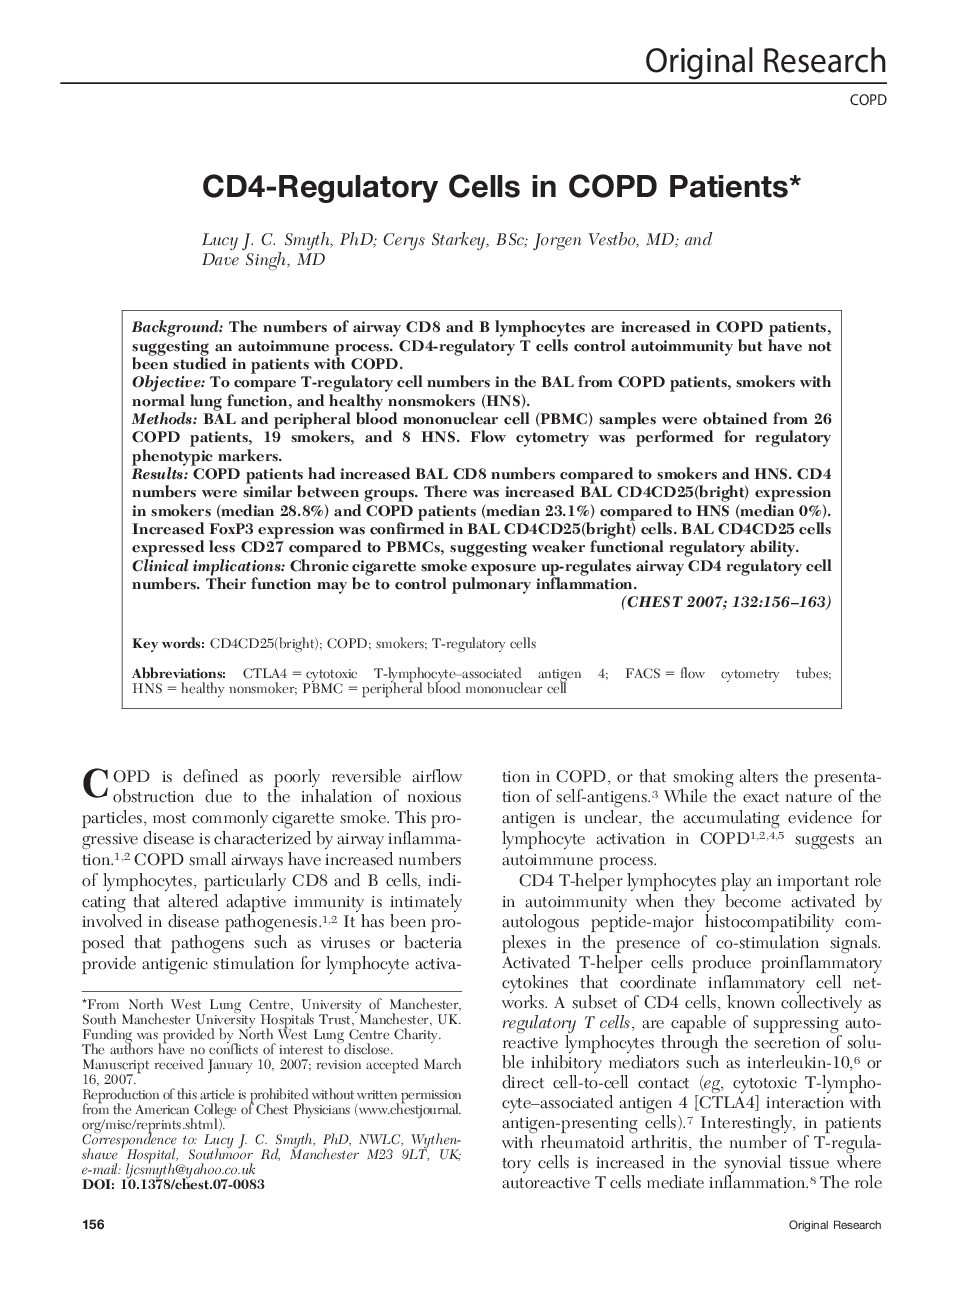 CD4-Regulatory Cells in COPD Patients 